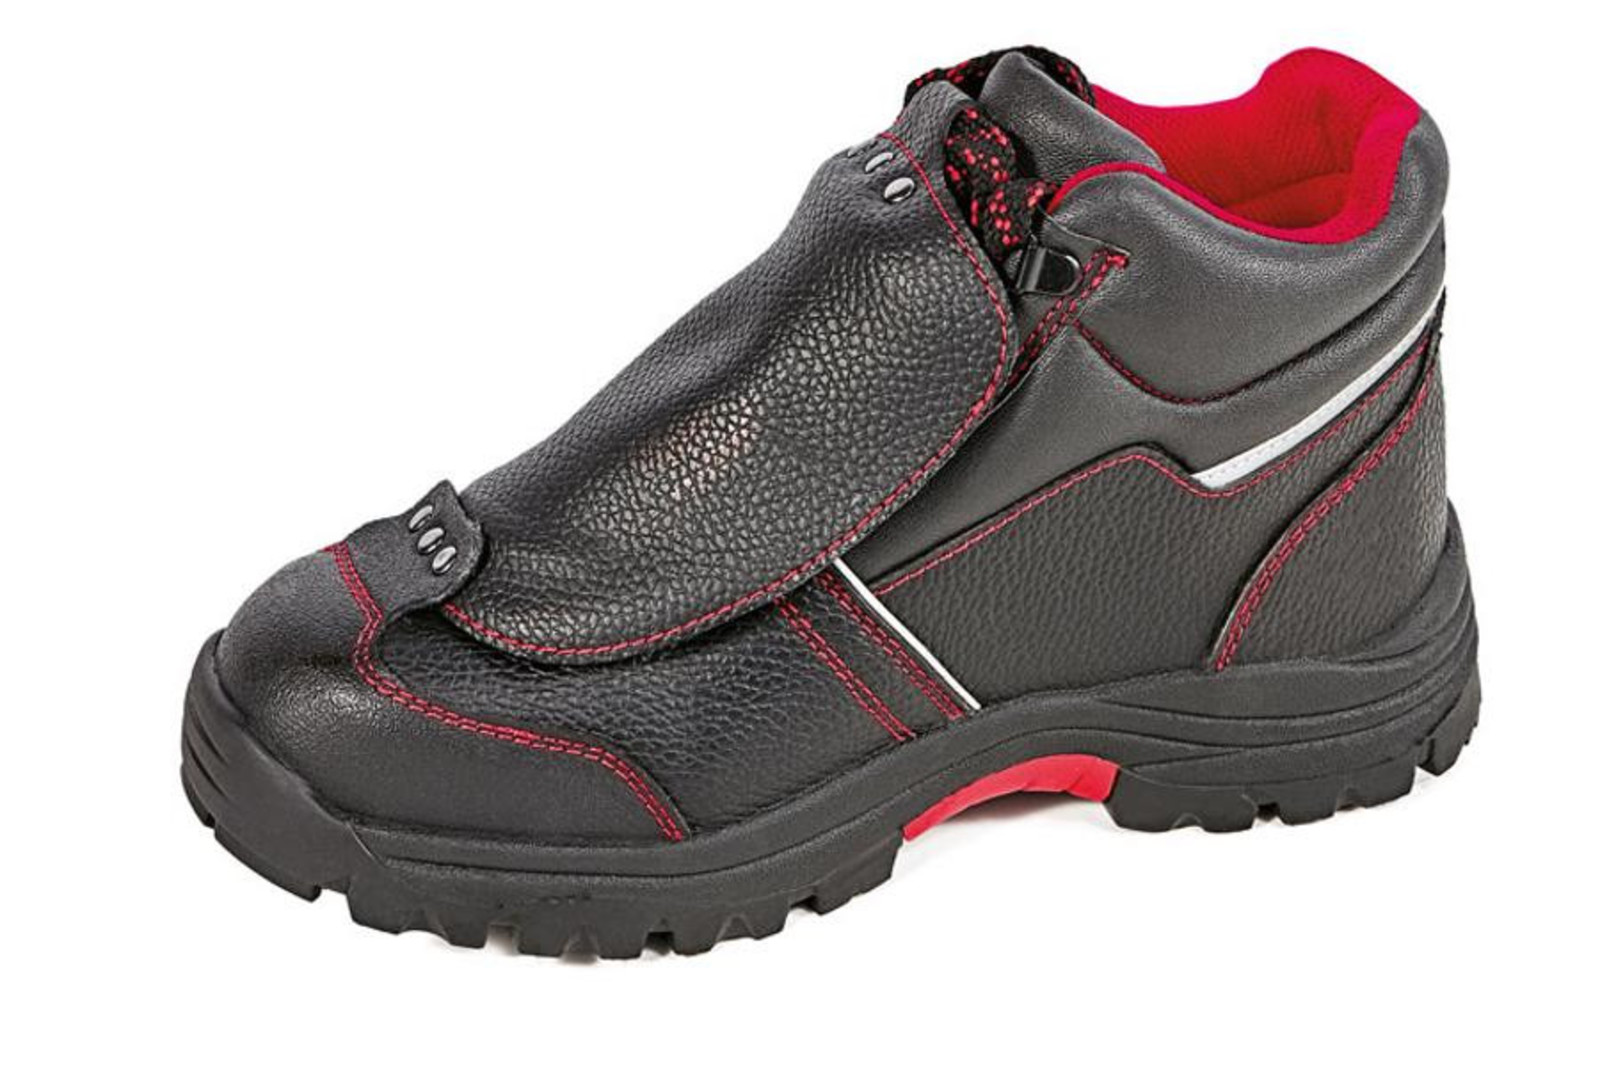 Bezpečnostná členková obuv Cerva Steeler Metatarsal S3 HRO M SRA  - veľkosť: 43, farba: čierna